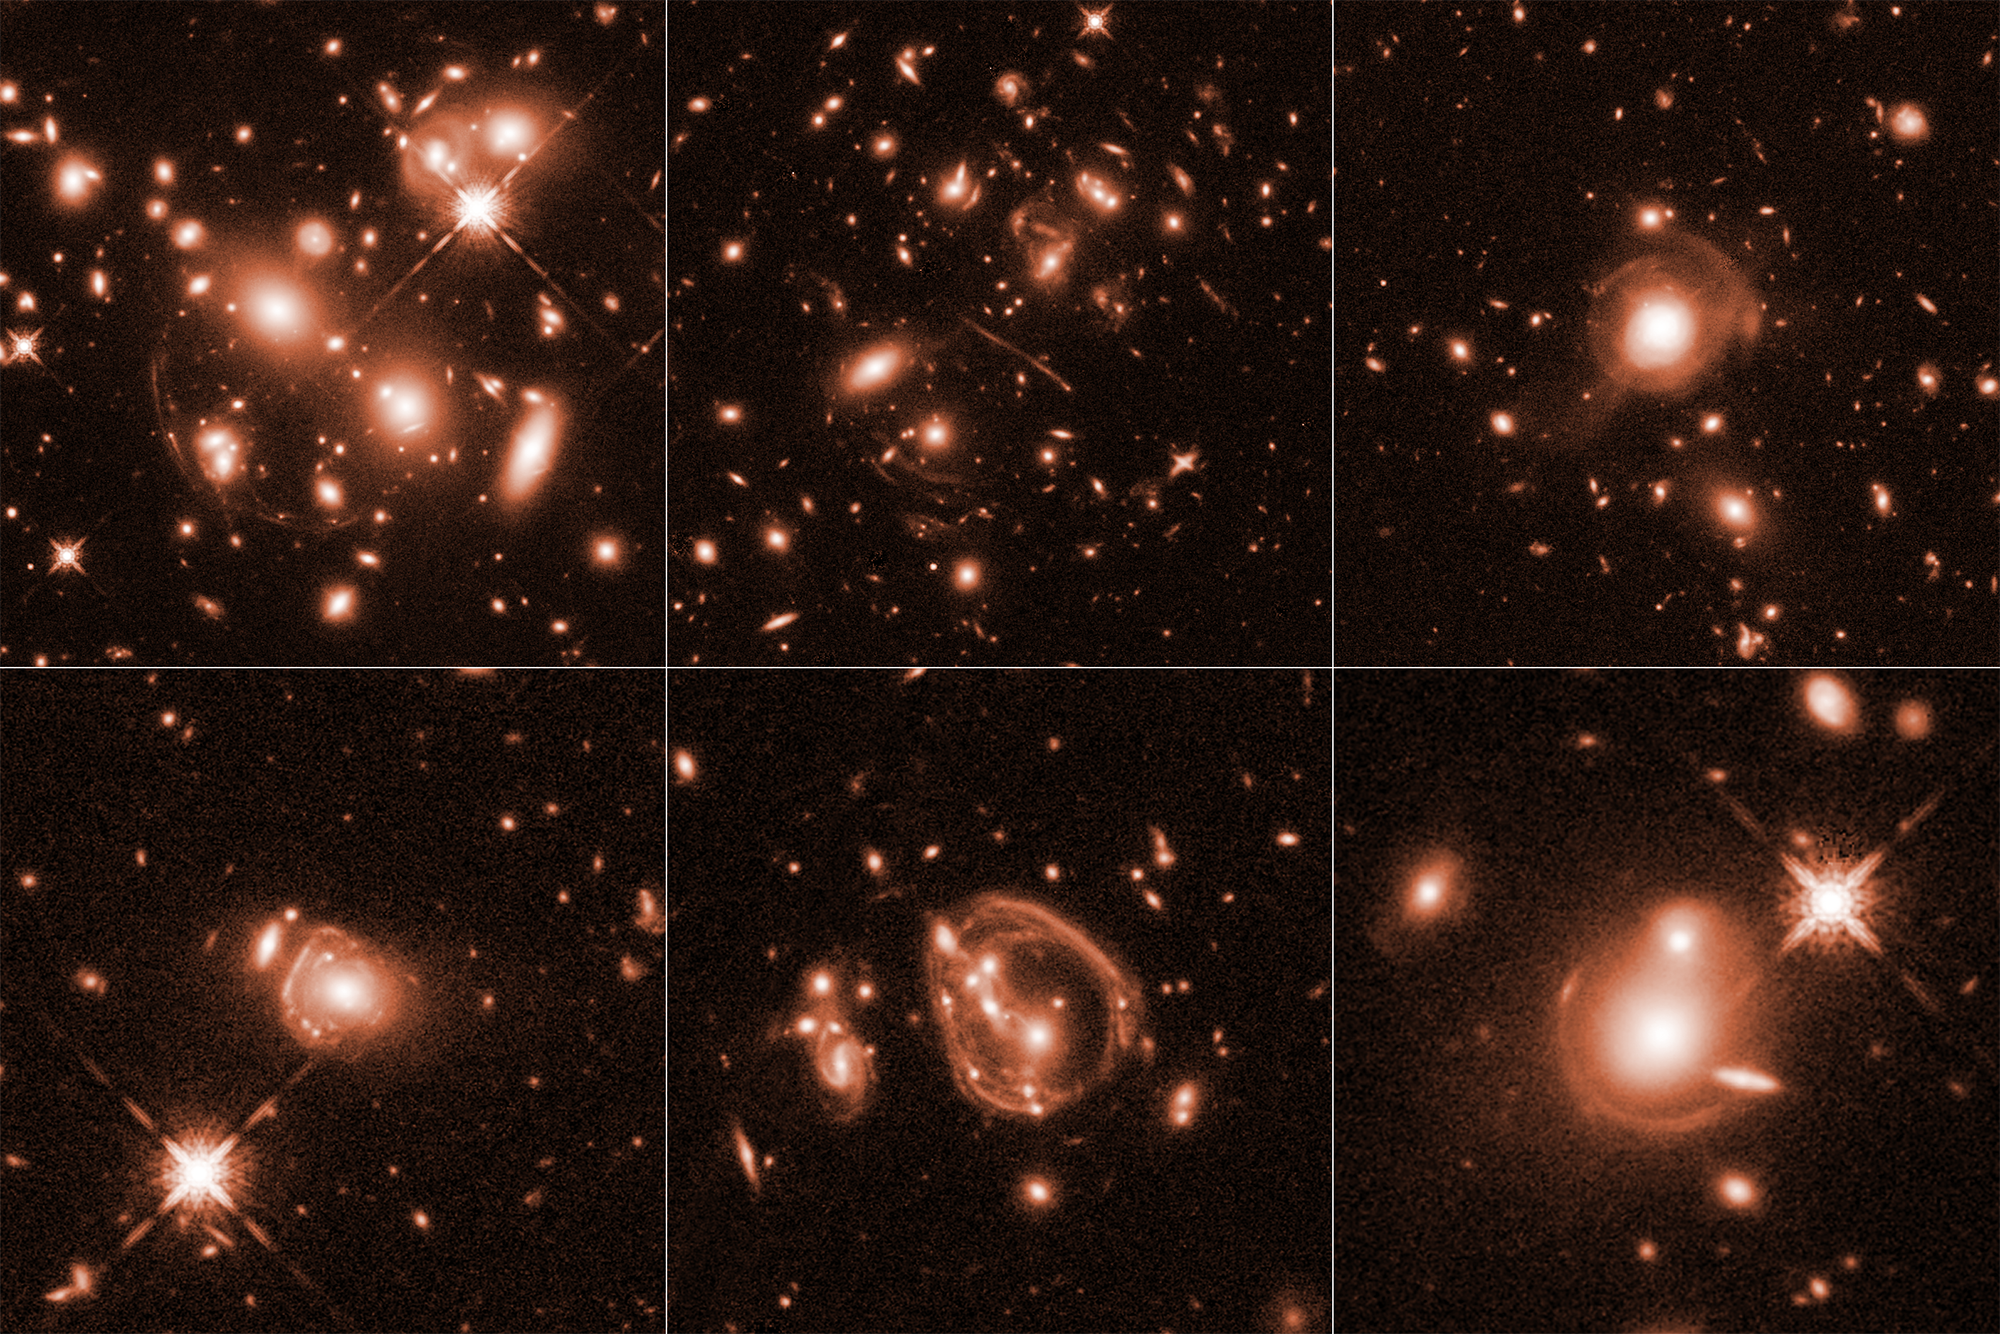 Obrazy sześciu gromad galaktyk ułożonych obok siebie w siatce 3x2